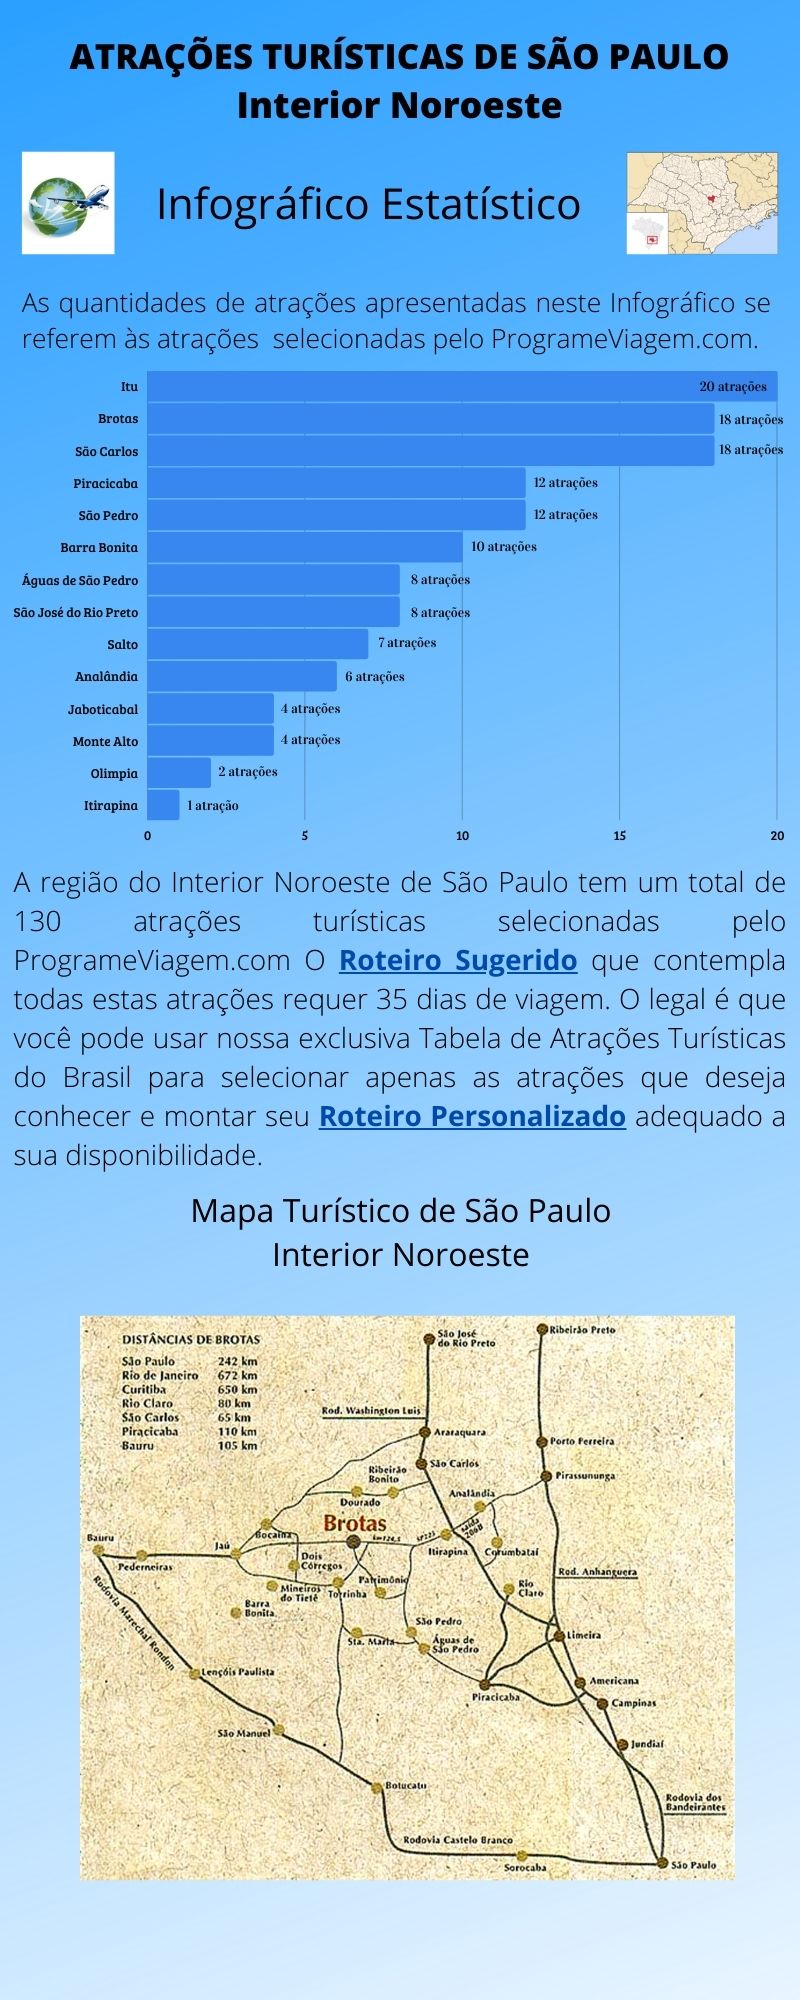 Infográfico Atrações Turísticas de São Paulo (Interior Noroeste)